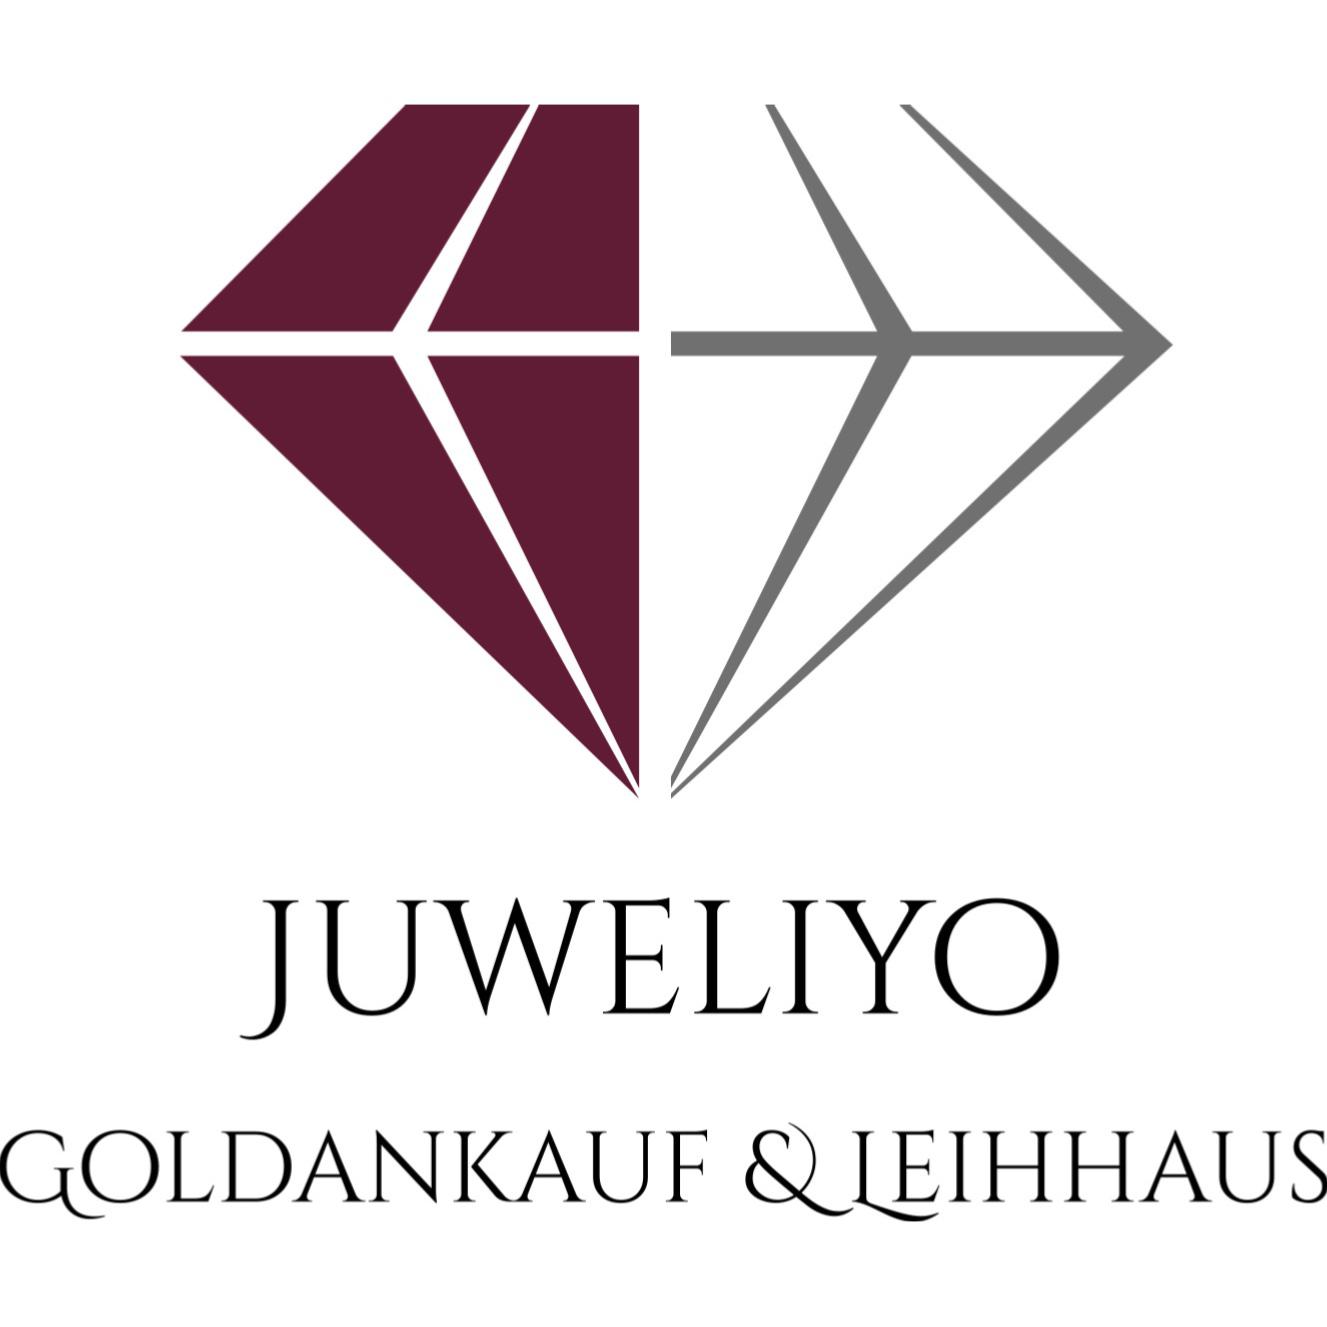 Goldankauf & Leihhaus Hannover- Juweliyo GmbH in Hannover - Logo